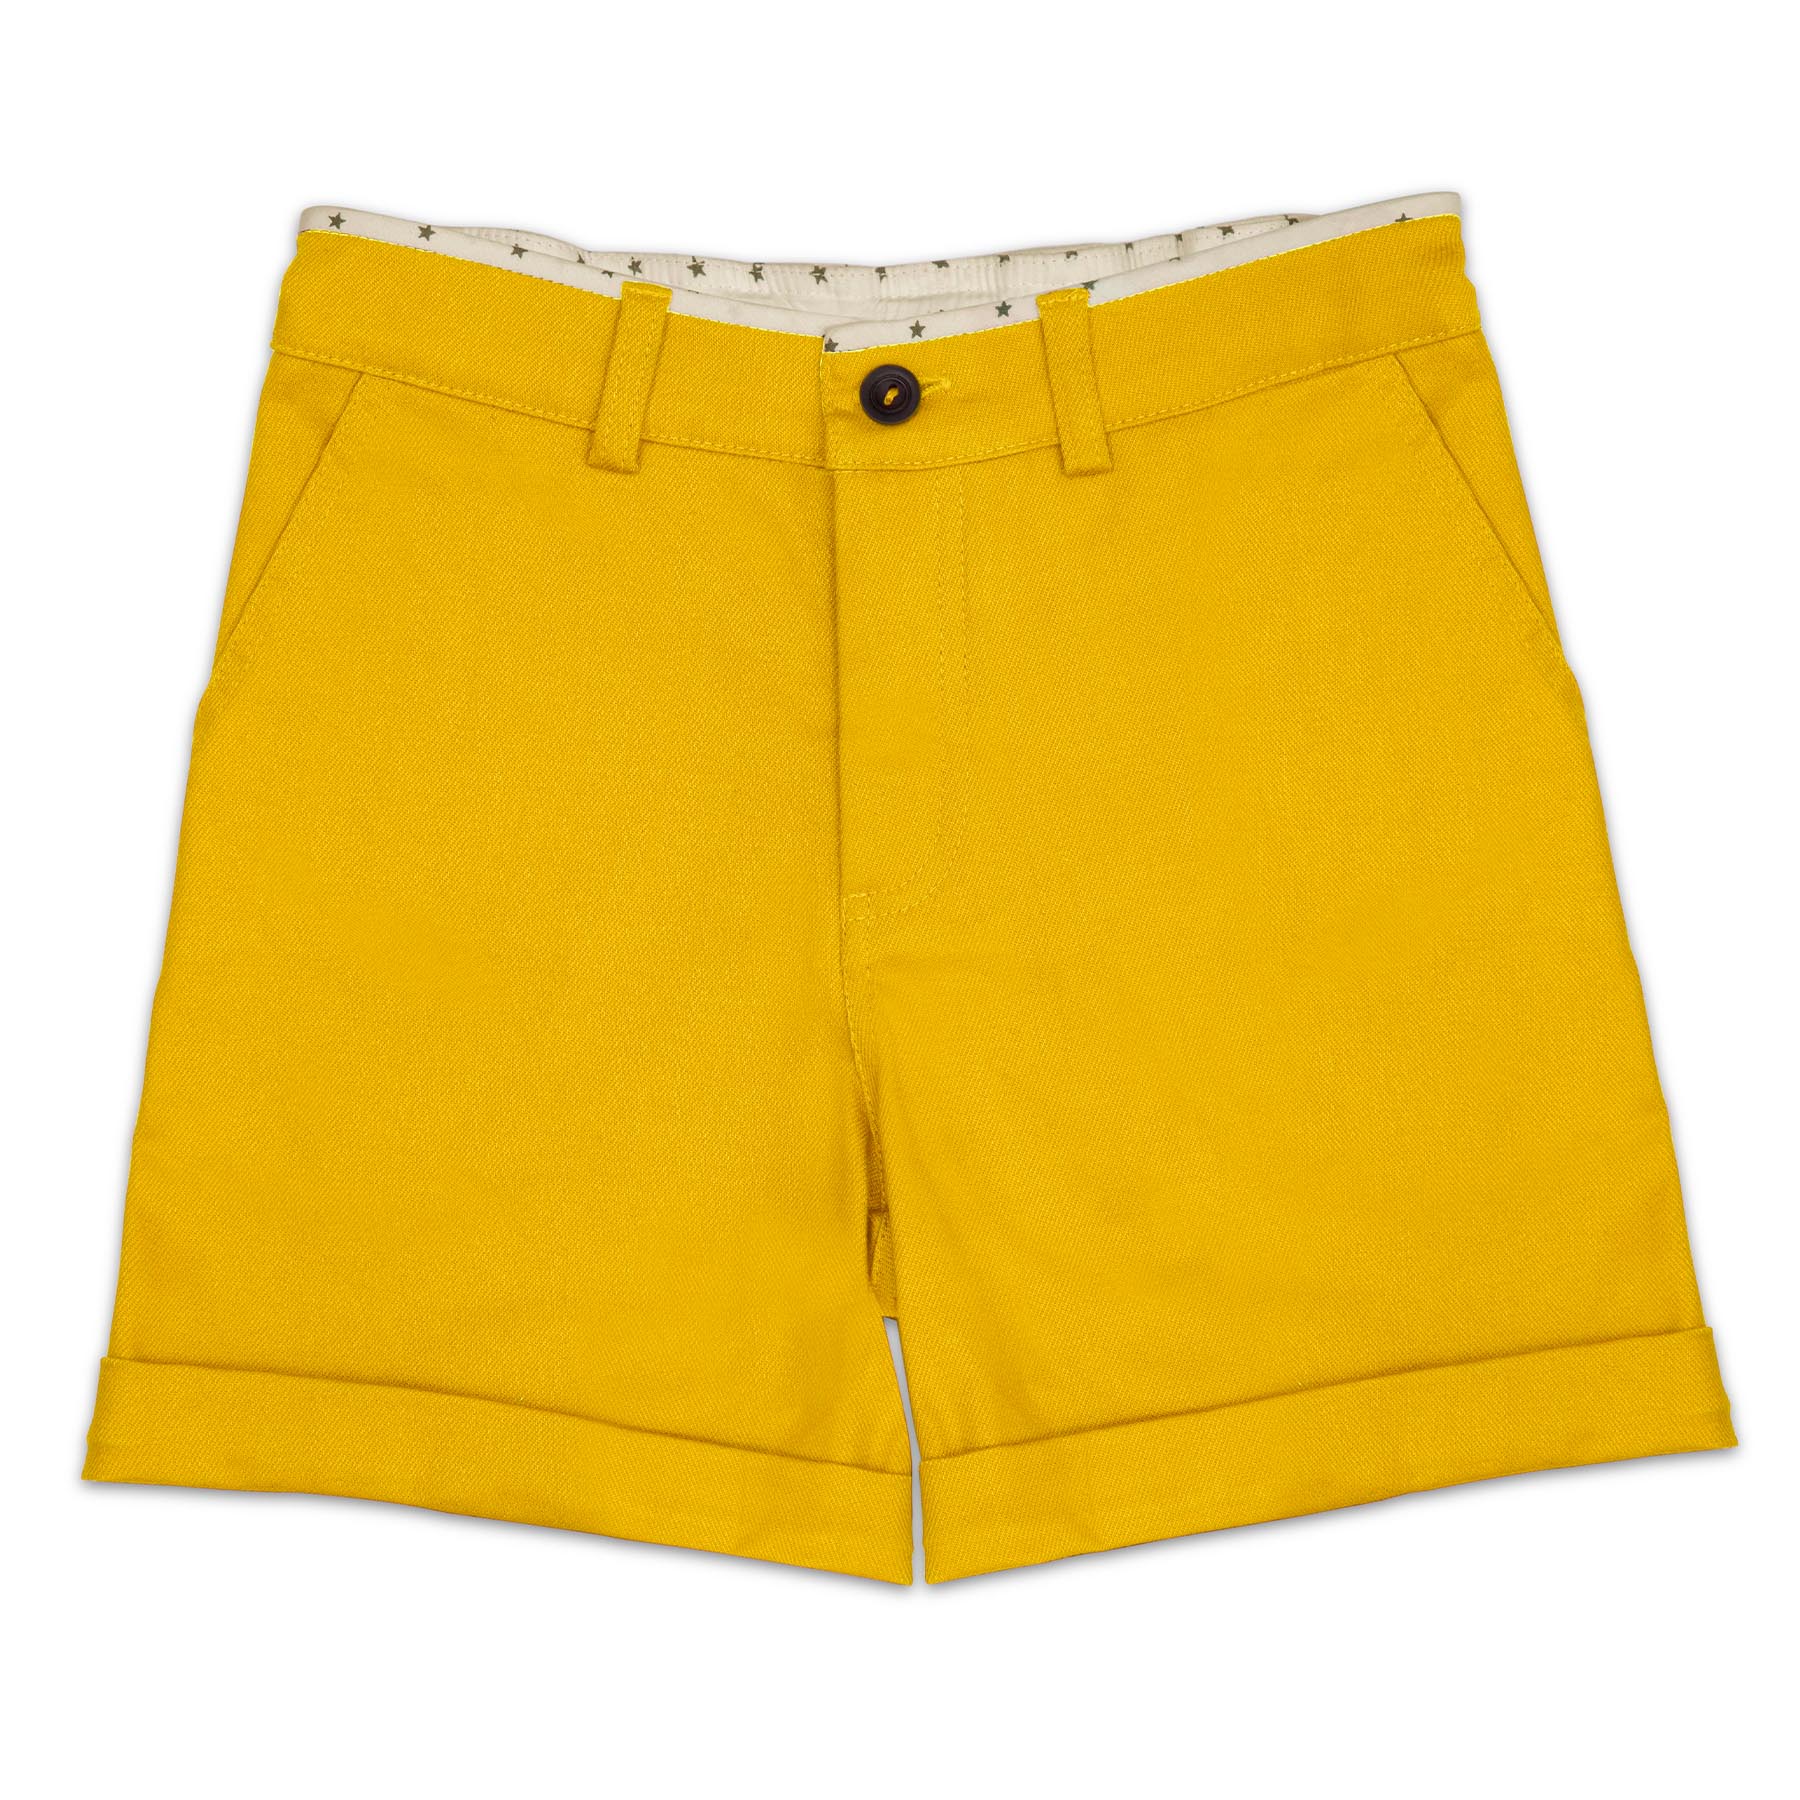 Bermuda avec revers été en coton jaune pour garçons de la marque de mode pour enfants La Faute à Voltaire